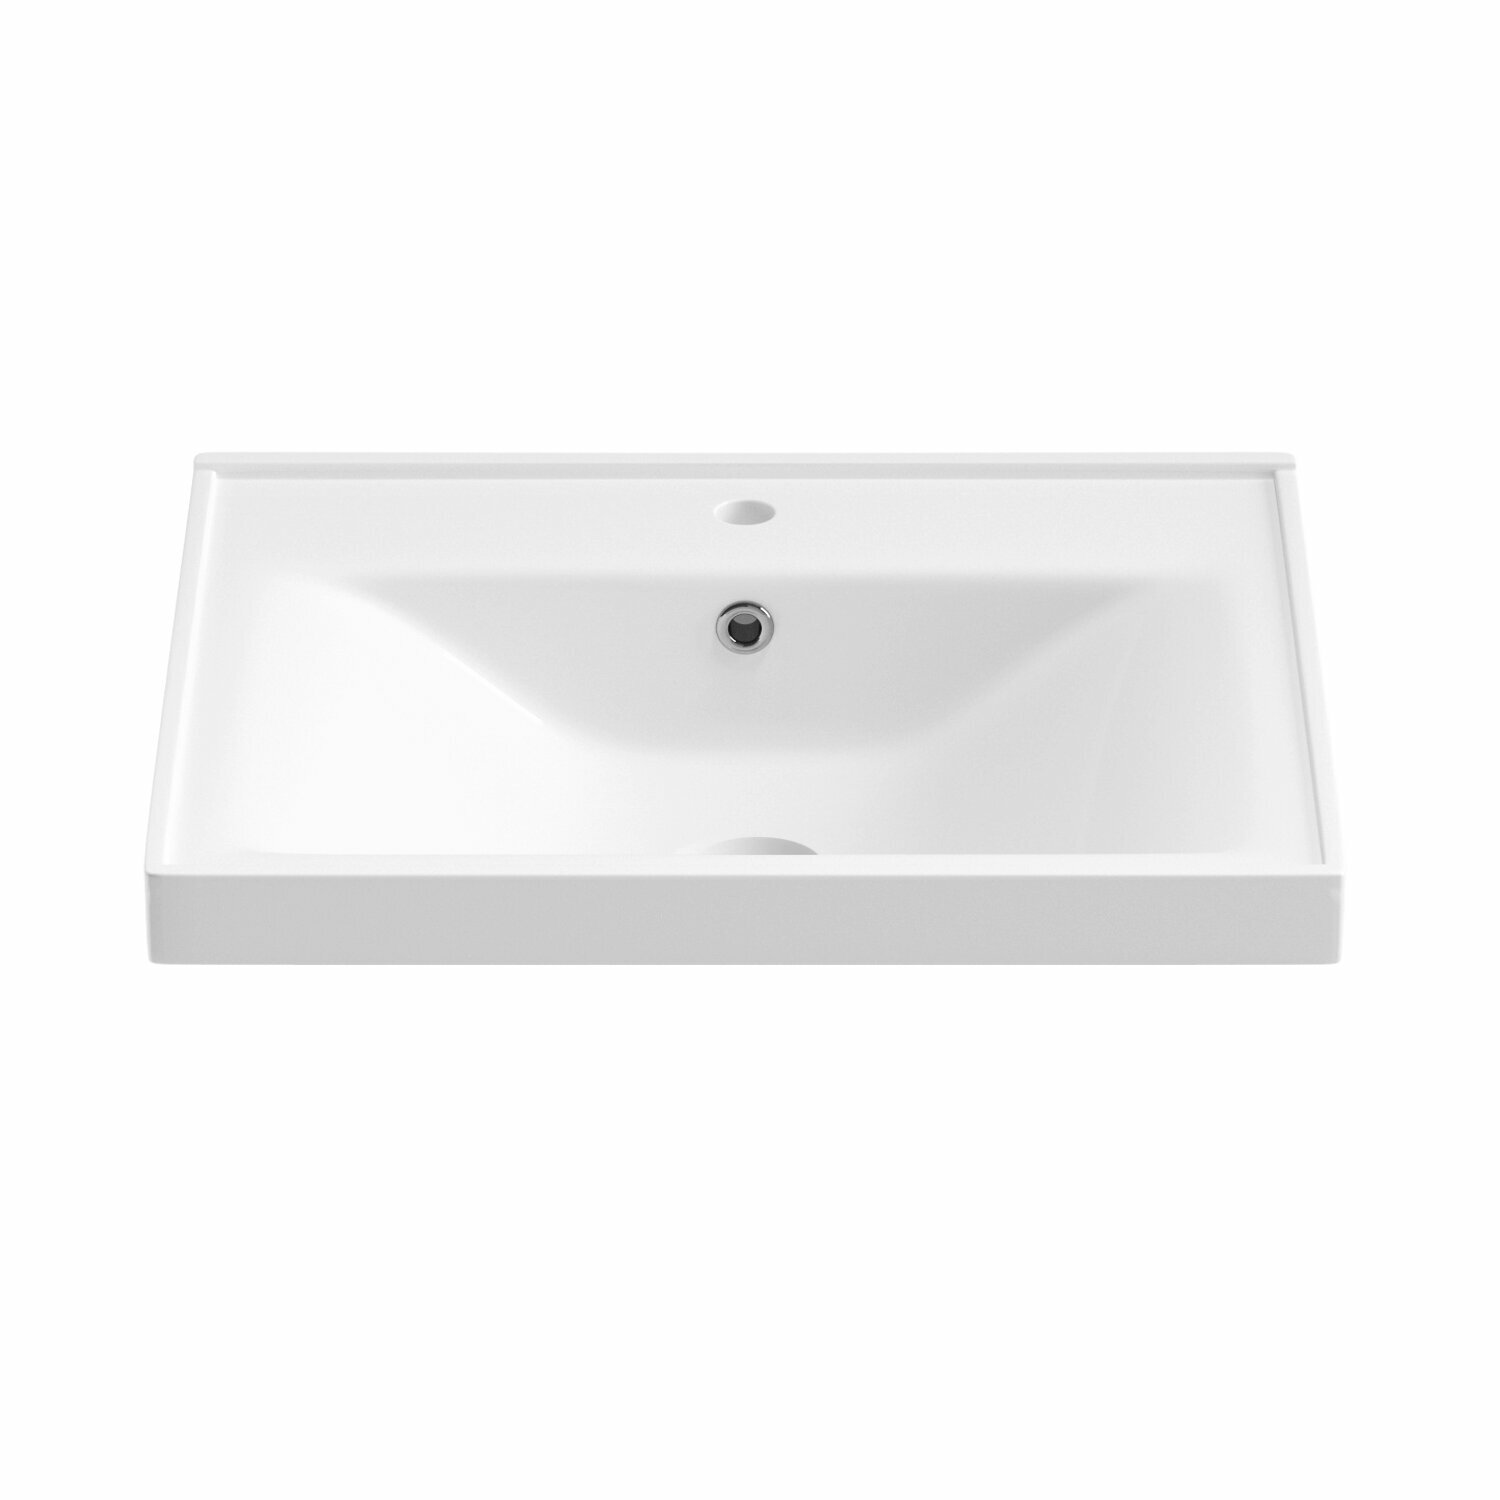 Подвесная/мебельная раковина для ванной комнаты Wellsee FreeDom 151103000, ширина умывальника 60,3 см, цвет глянцевый белый